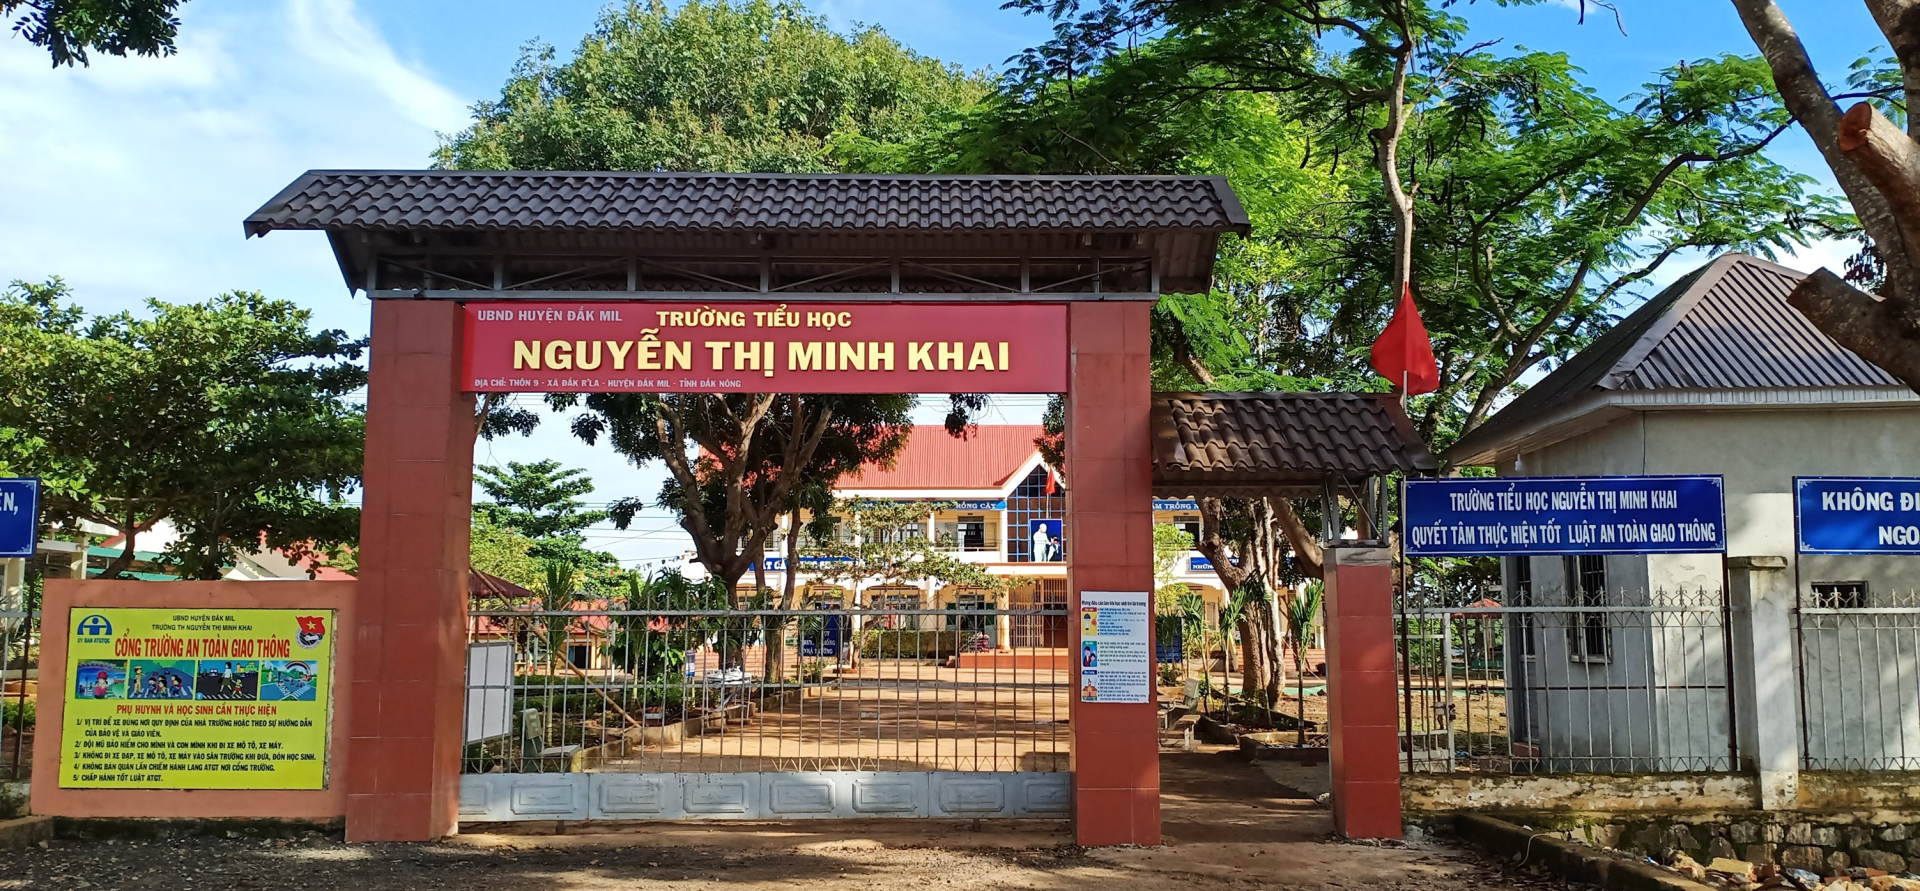 Trường tiểu học Nguyễn Thị Minh Khai - nơi có học sinh bị chó tấn công.